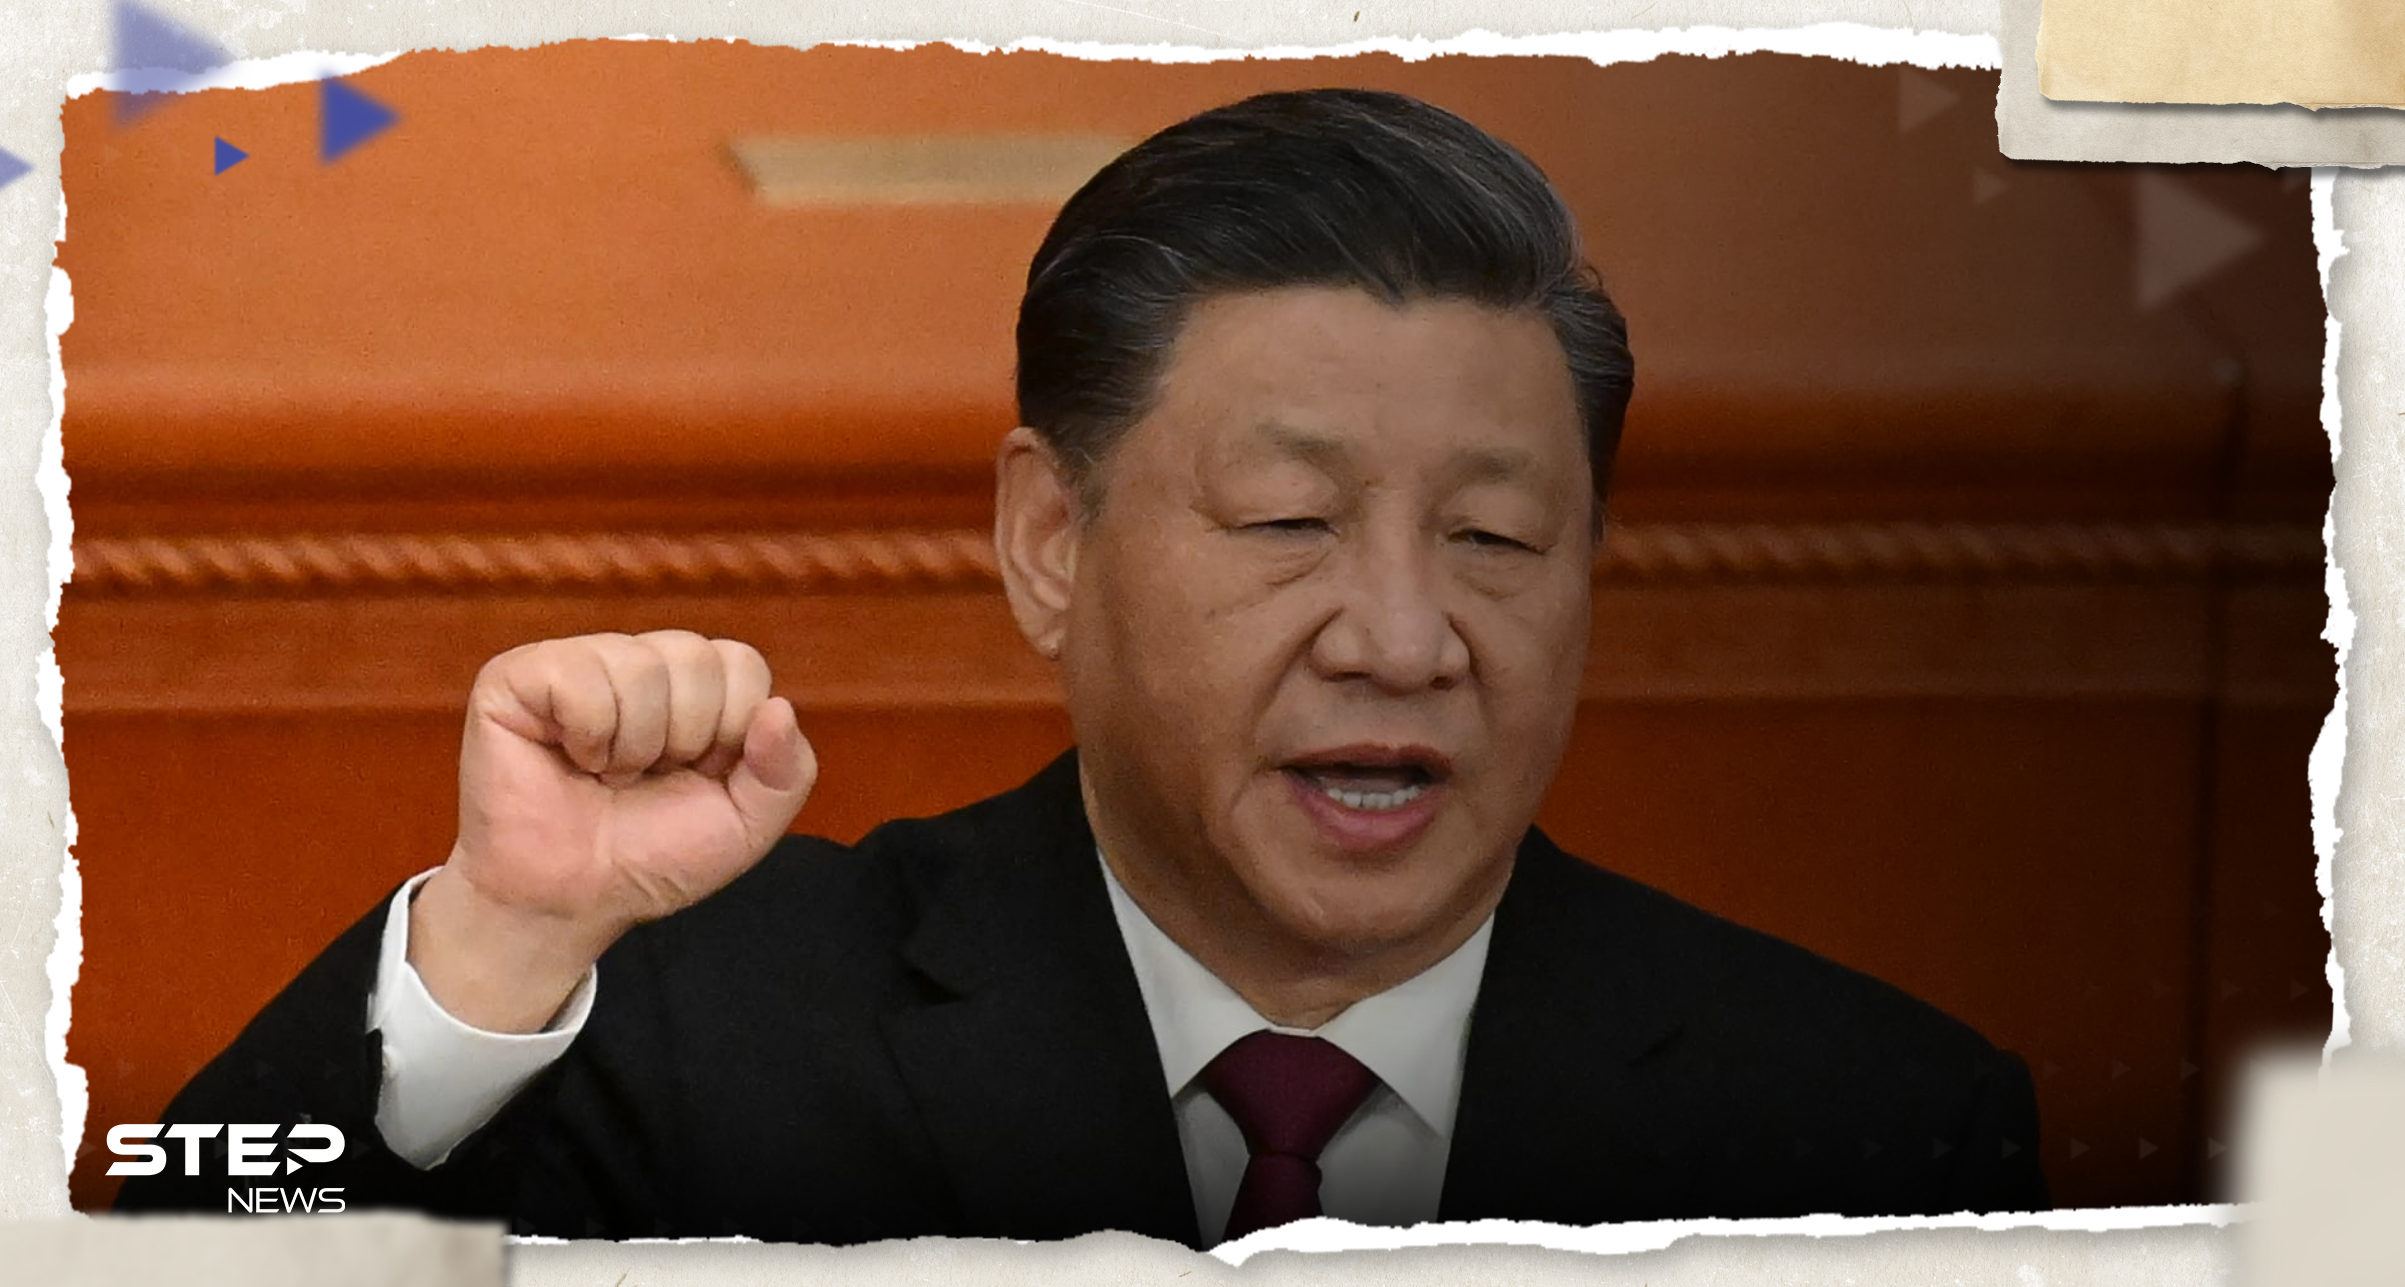 الرئيس الصيني يتحدث عن "حرب باردة" في المنطقة ويدعو دول منظمة شنغهاي لأمر